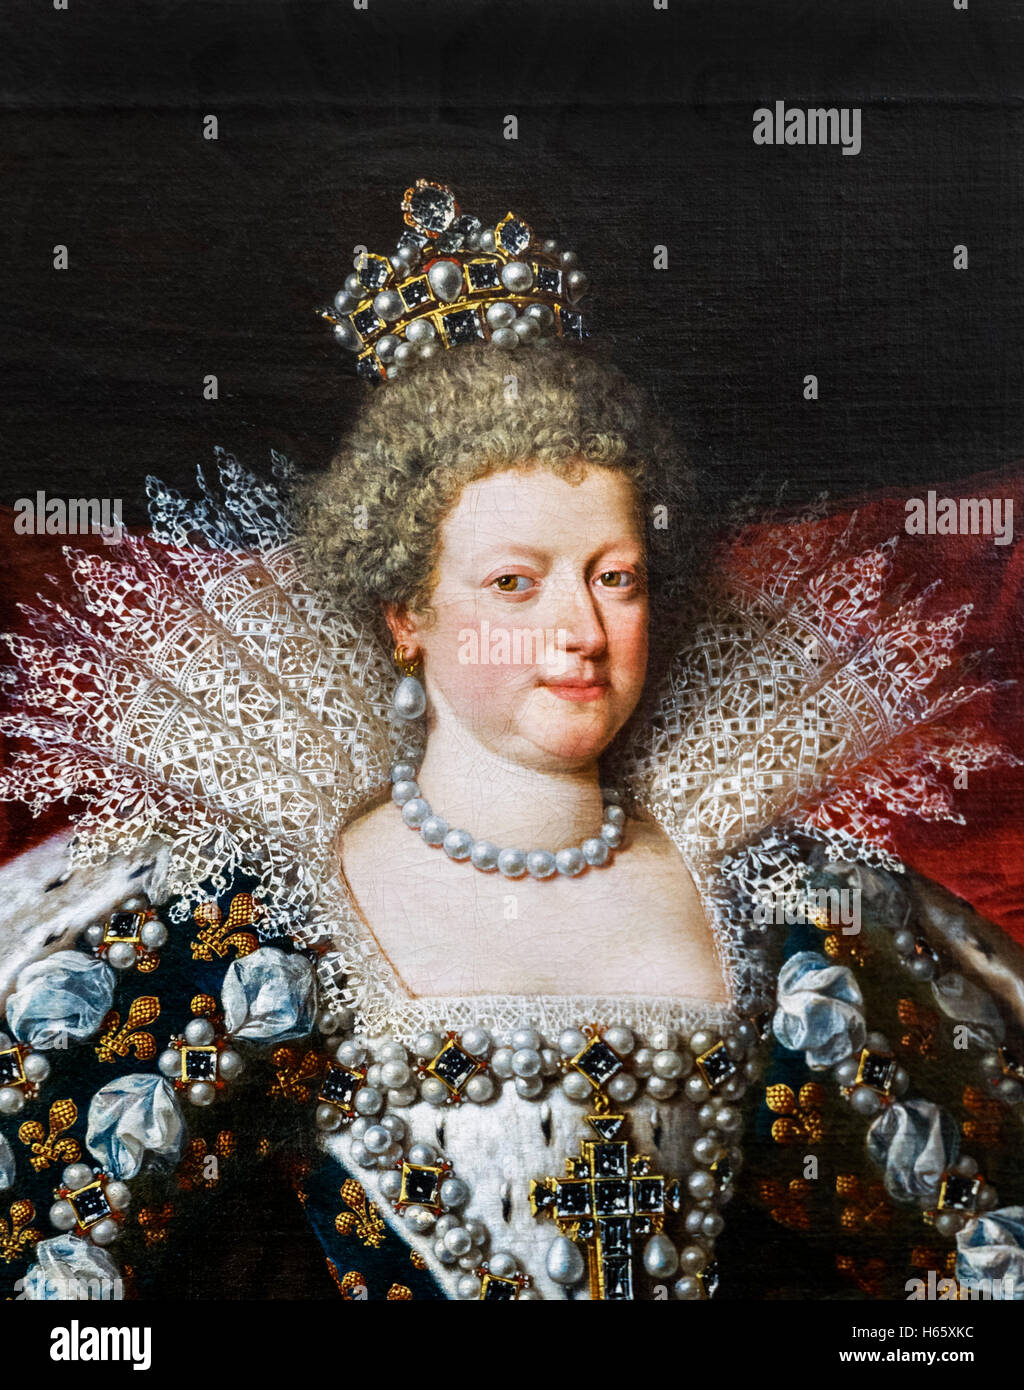 Maria de' Medici (Marie de Médicis: 1575-1642) fu regina di Francia come la seconda moglie del re Enrico IV di Francia. Ritratto c.1609-10 da Franz Pourbus il giovane. Questo è un dettaglio di un dipinto di grandi dimensioni, H65XK2 Foto Stock